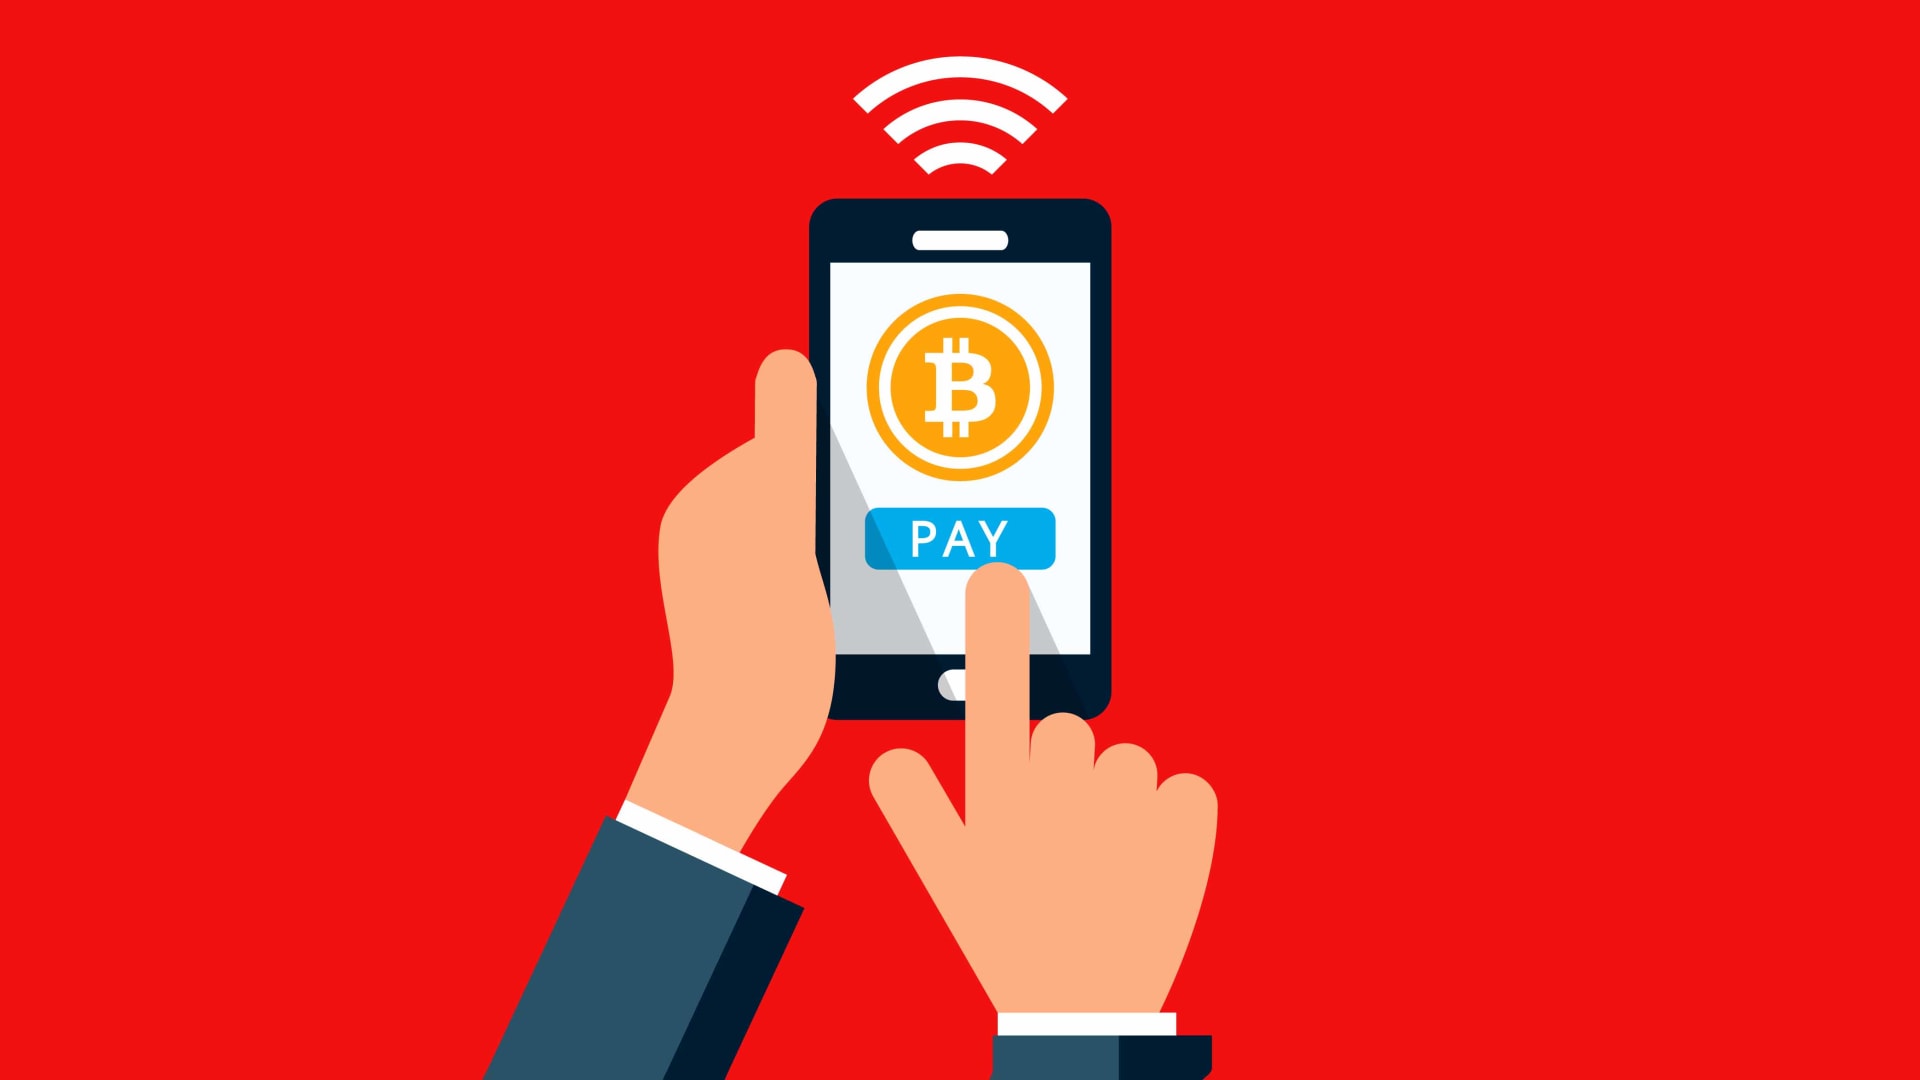 Strike lanza una nueva función para permitir que los usuarios conviertan los salarios a Bitcoin